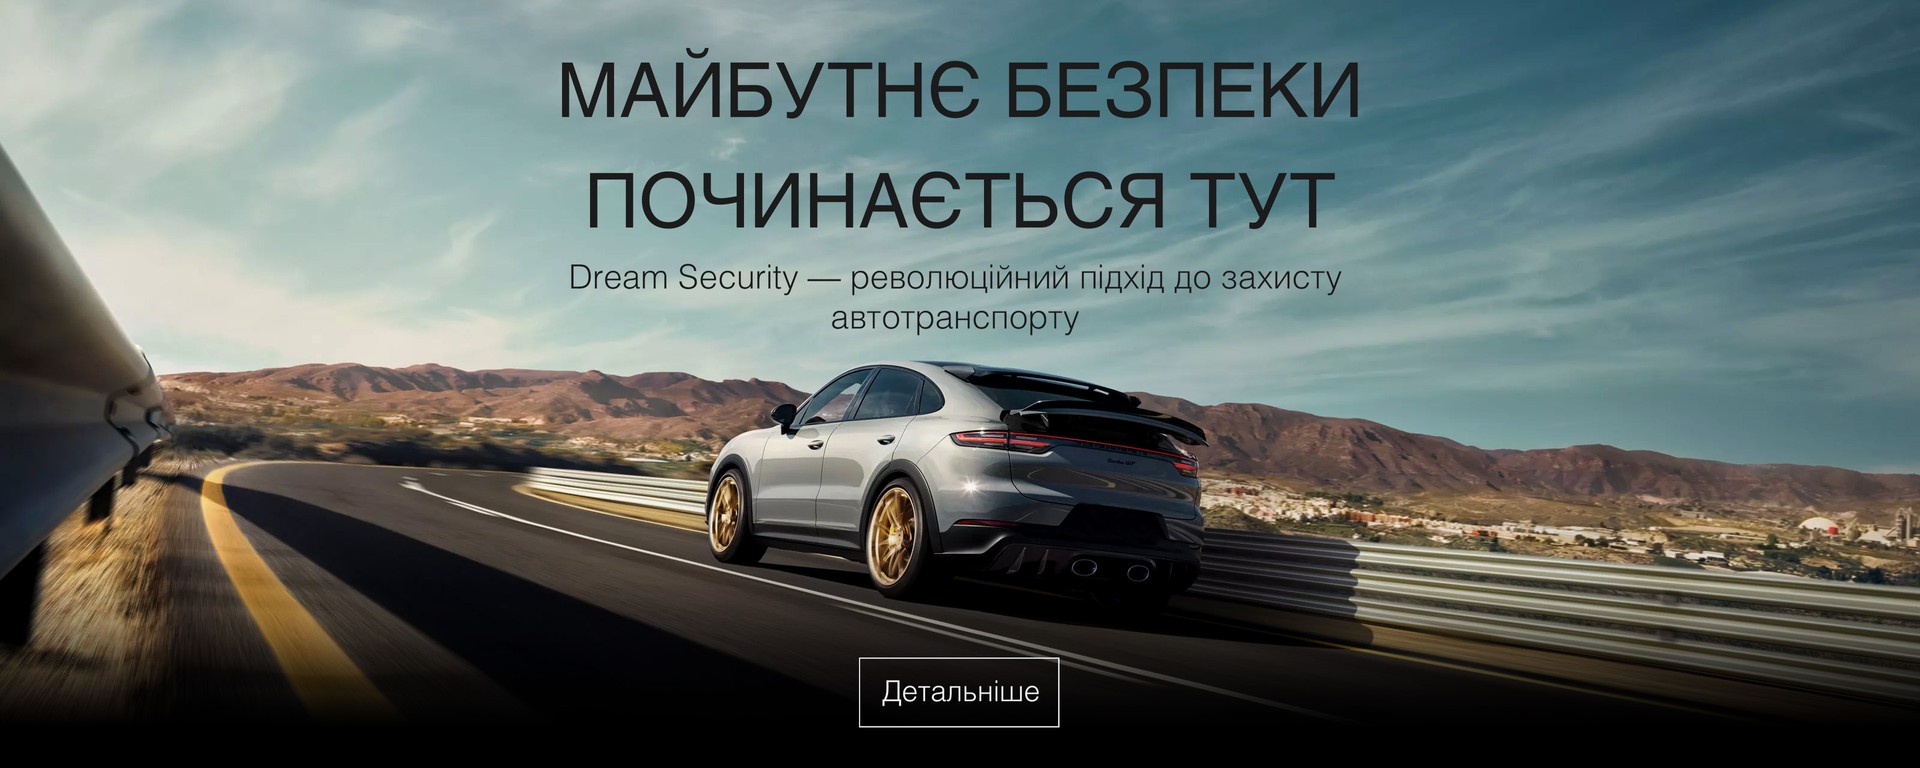 Car Dream Security